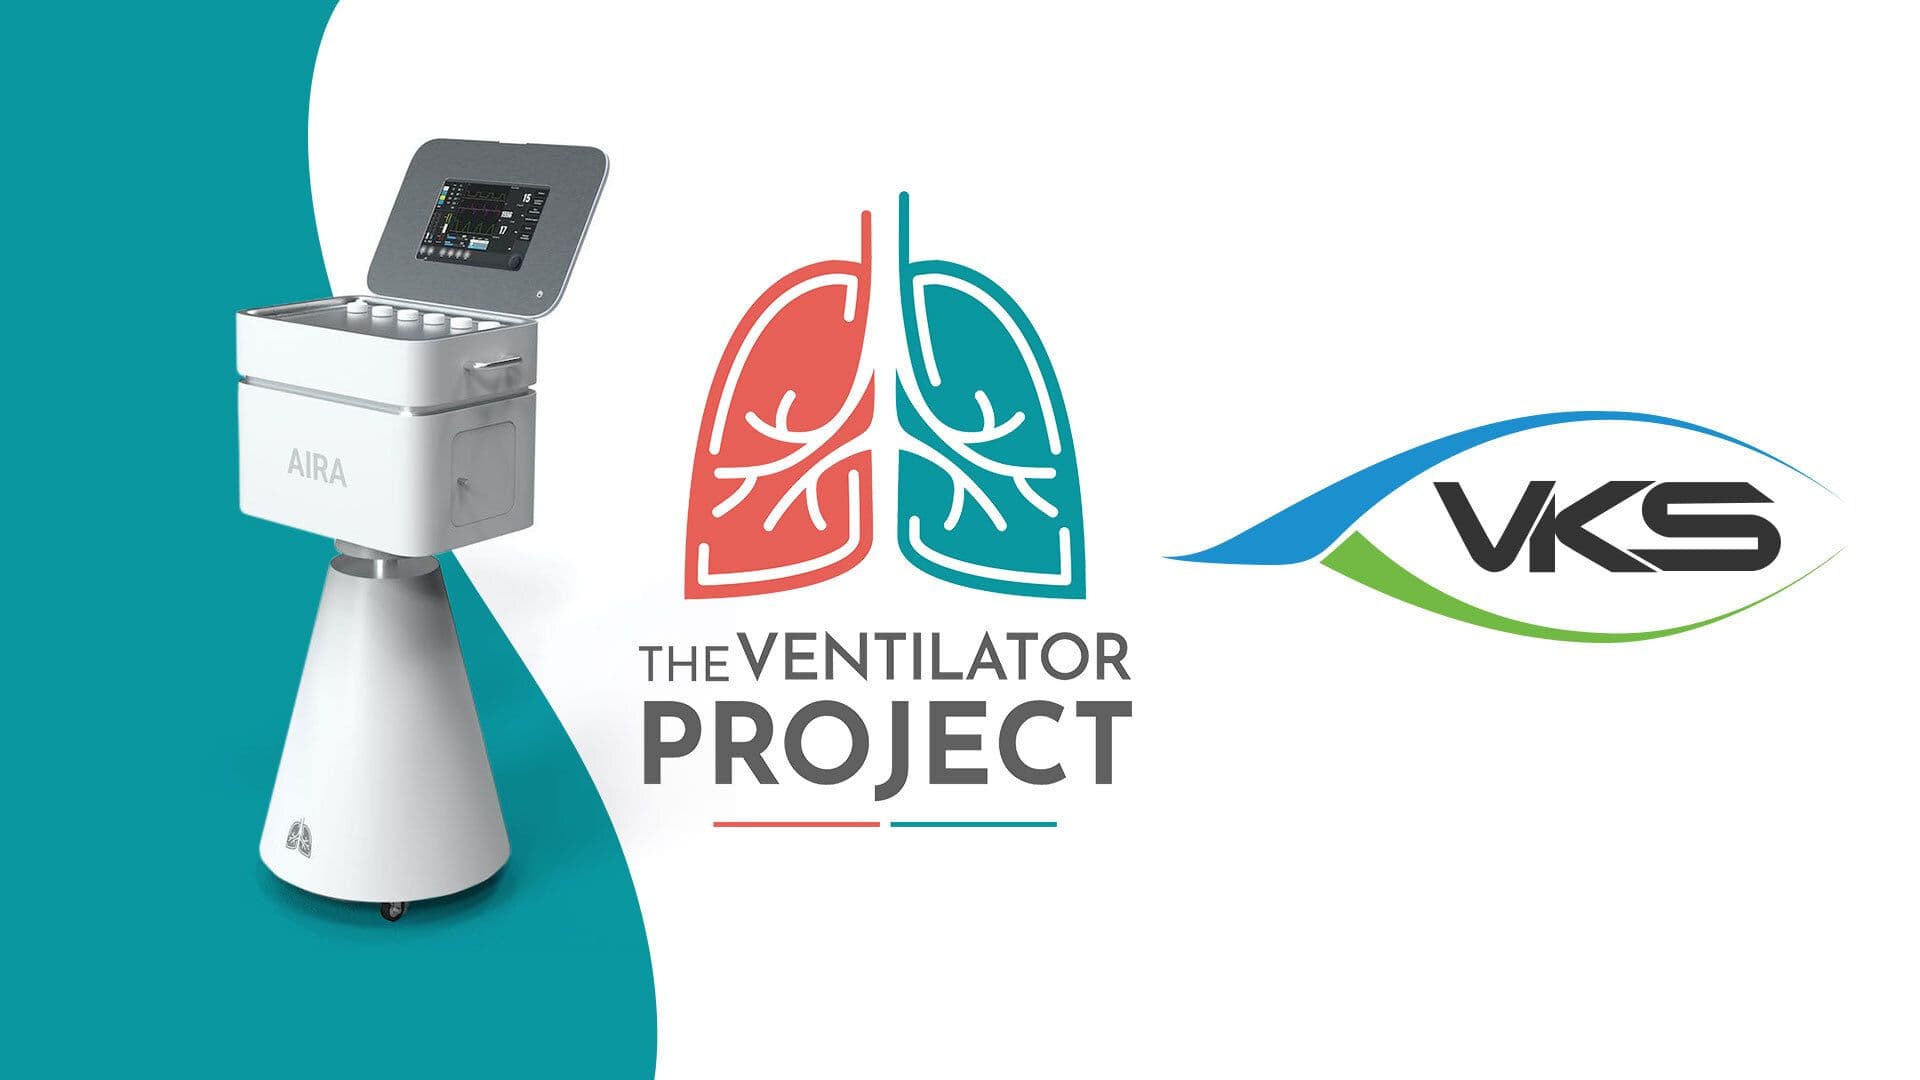 Notre partenariat avec The Ventilator Project insuffle une nouvelle vie au monde industriel